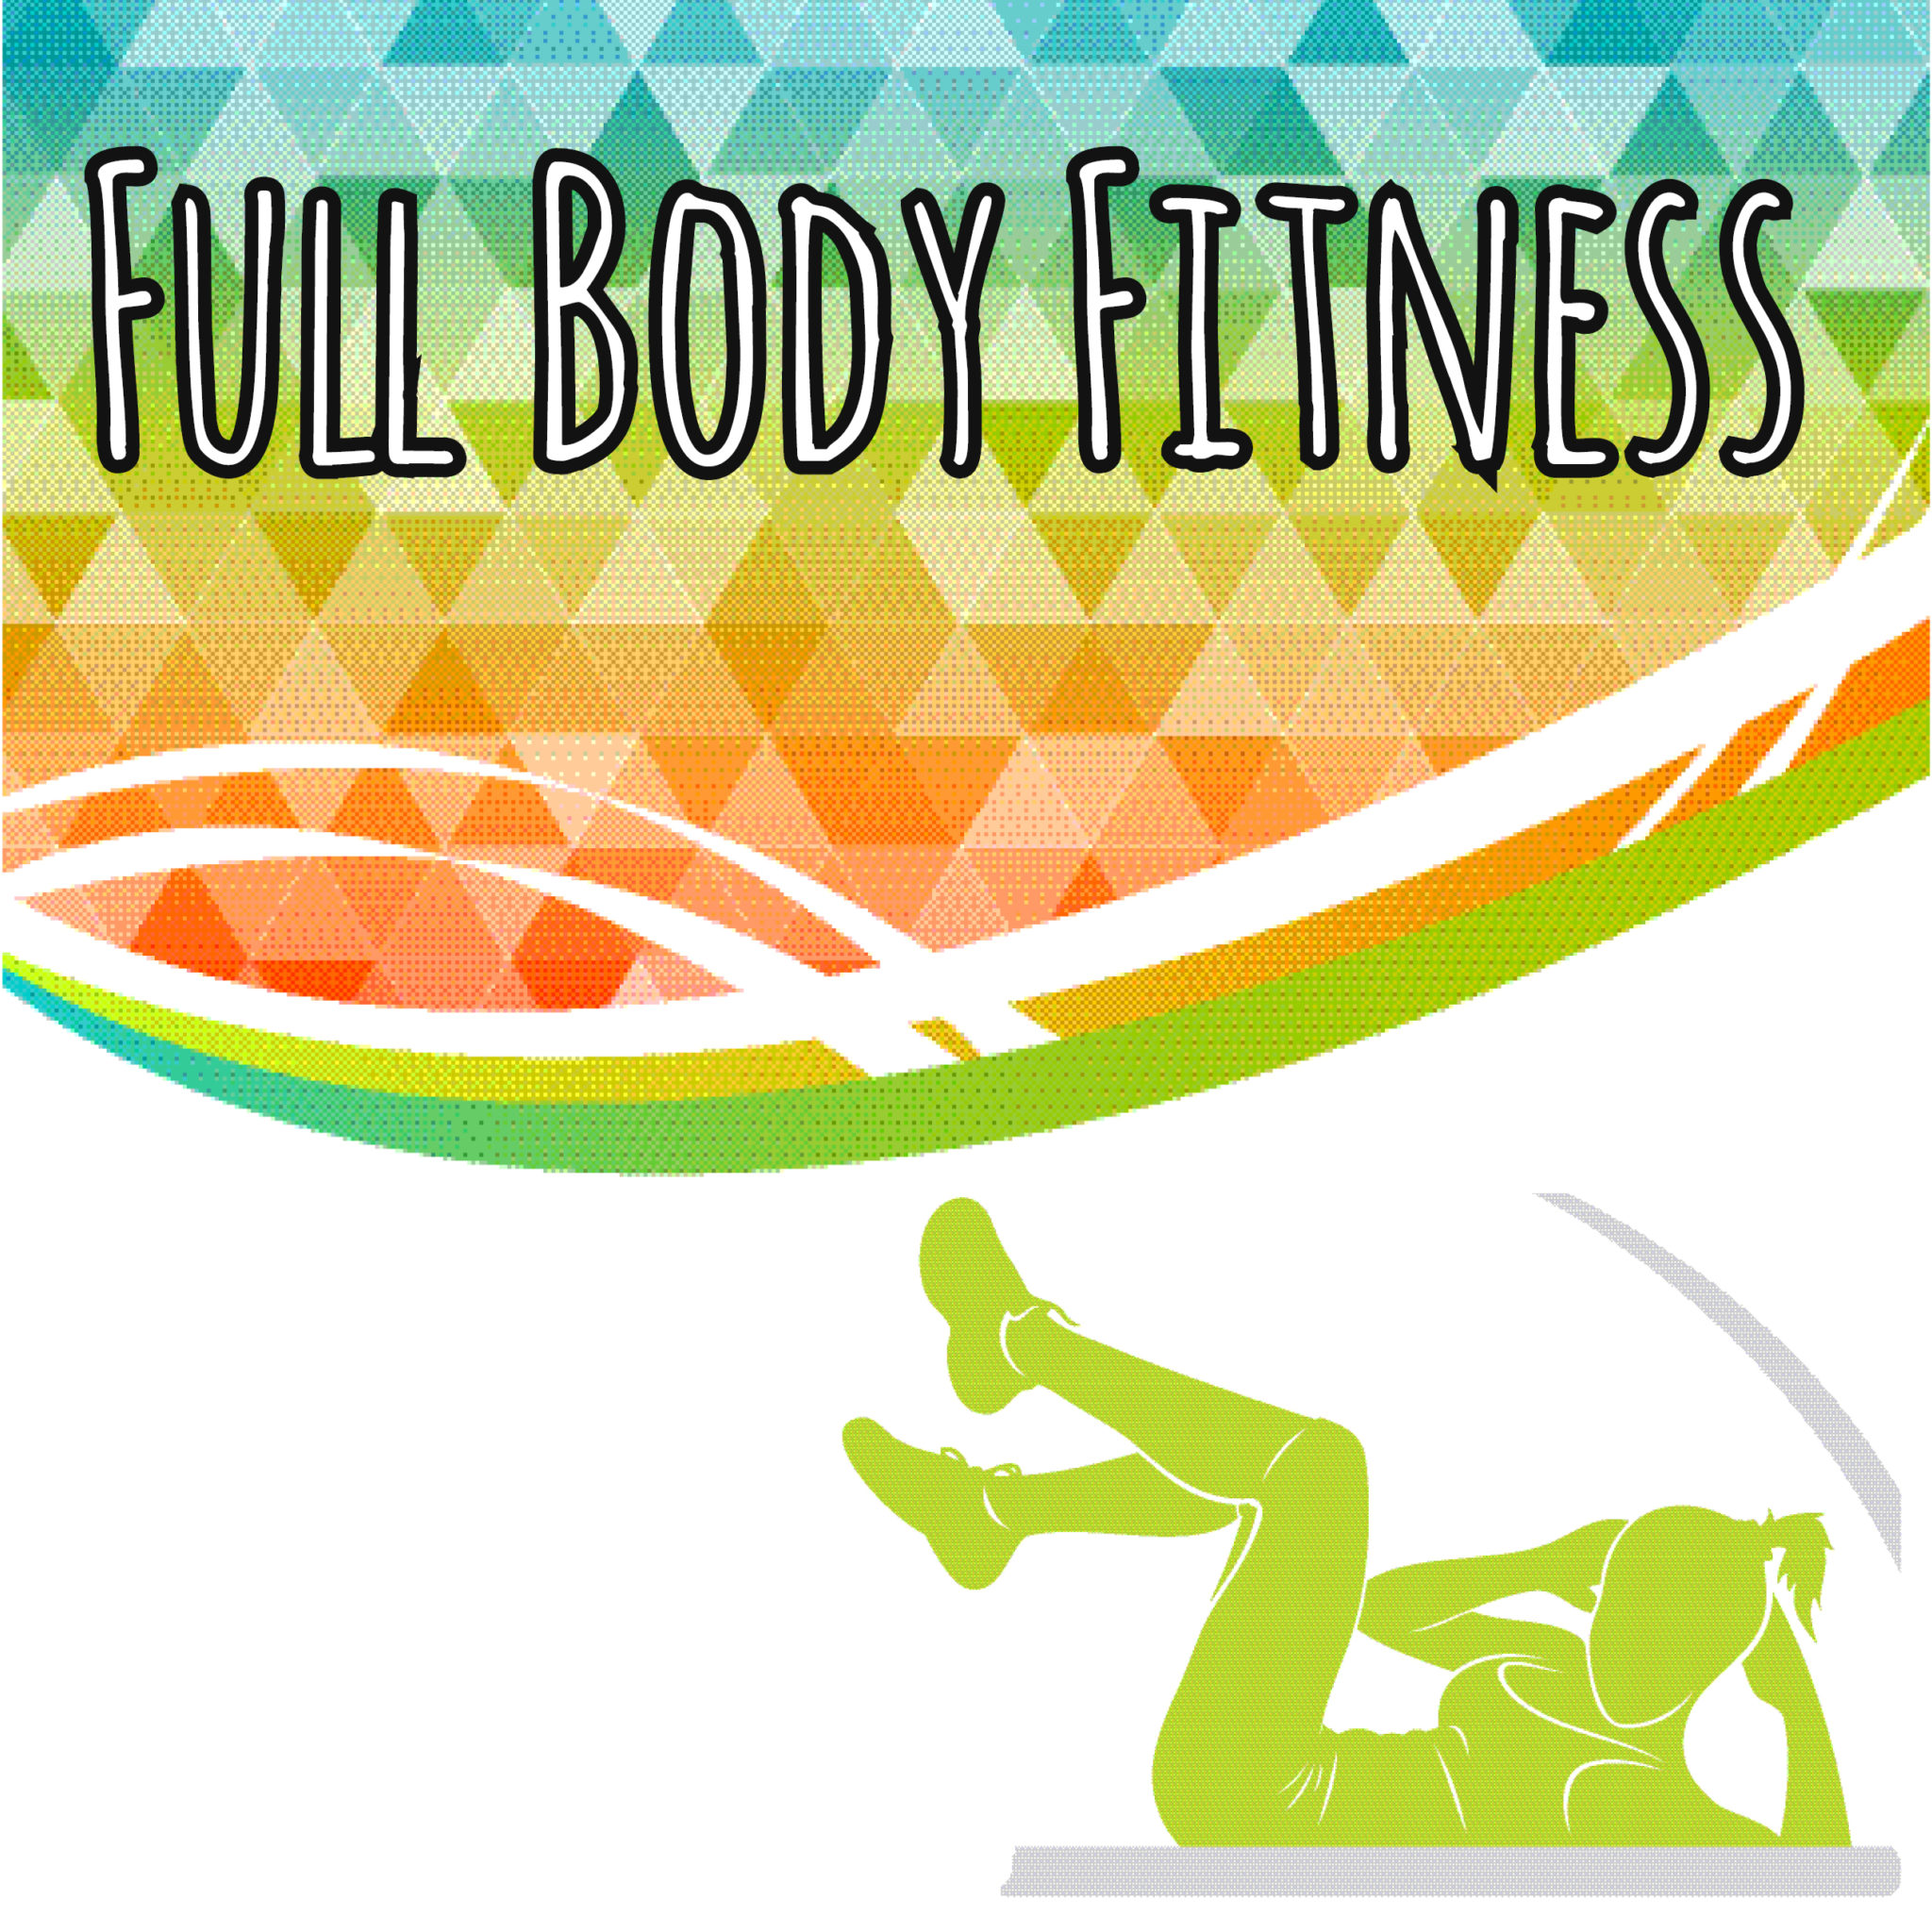 Full Body Fitness